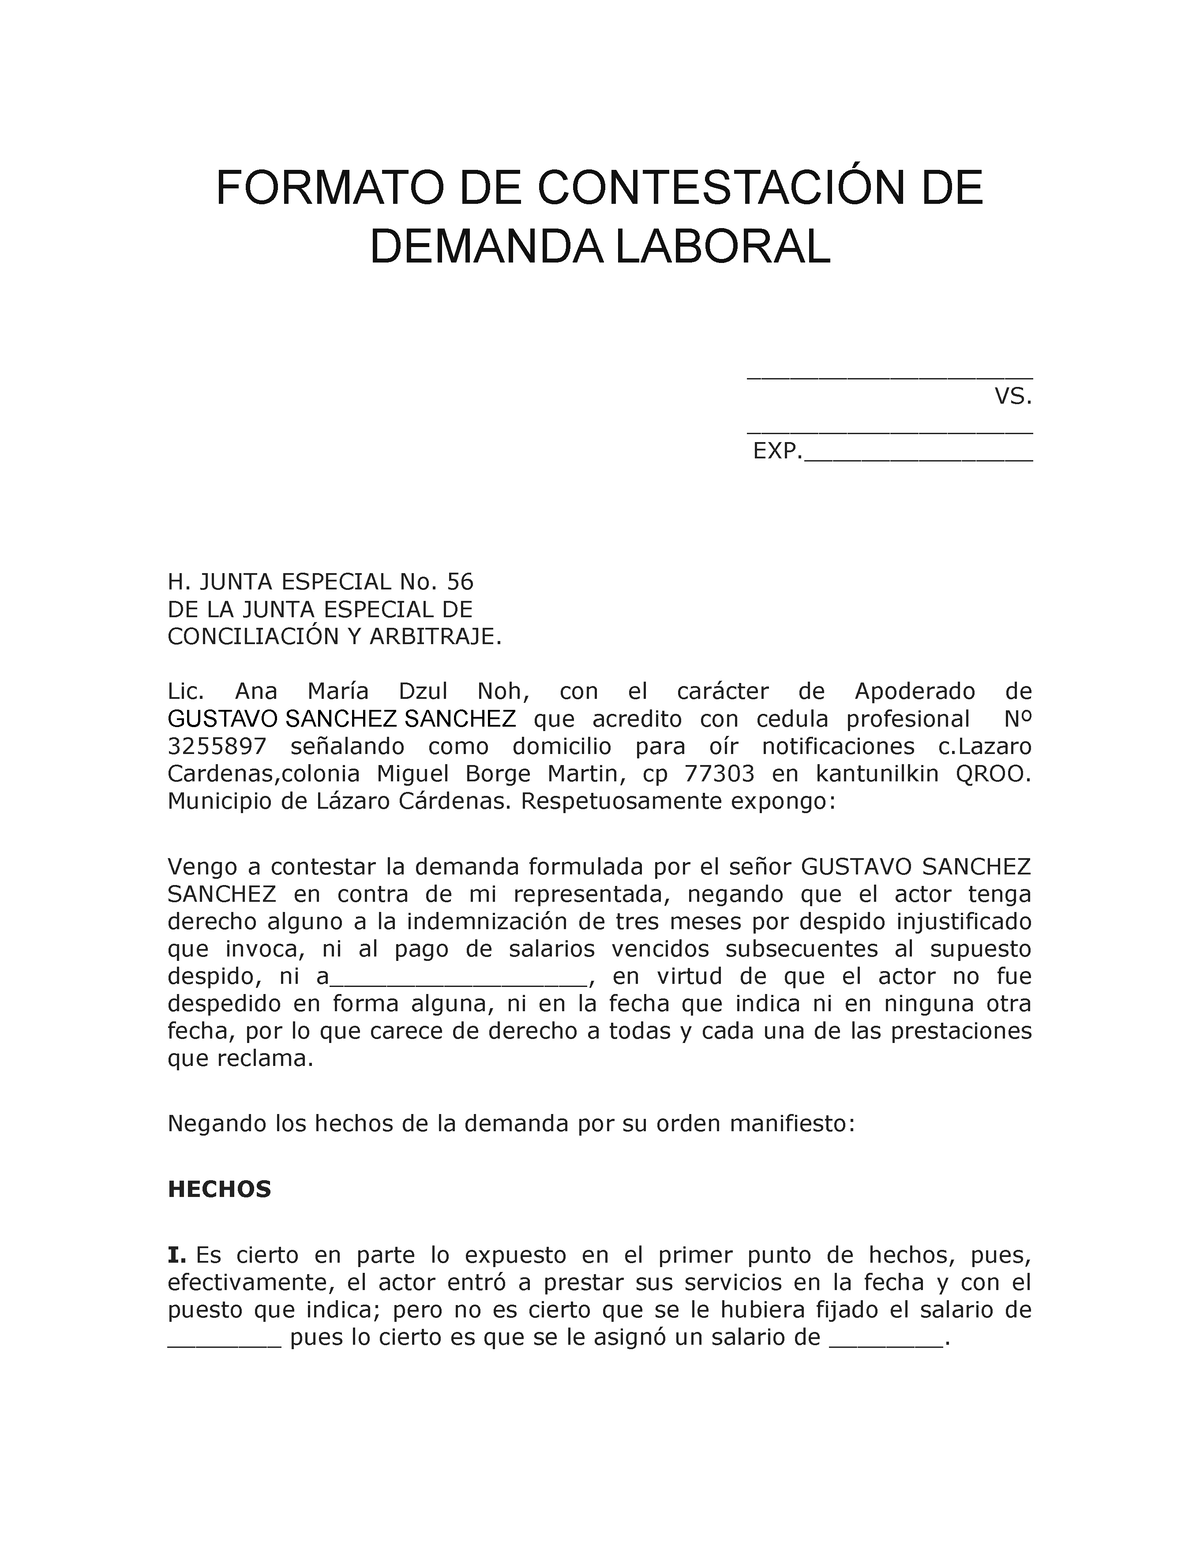 Formato DE Contestación DE Demanda Laboral - FORMATO DE CONTESTACIÓN DE DEMANDA  LABORAL - Studocu